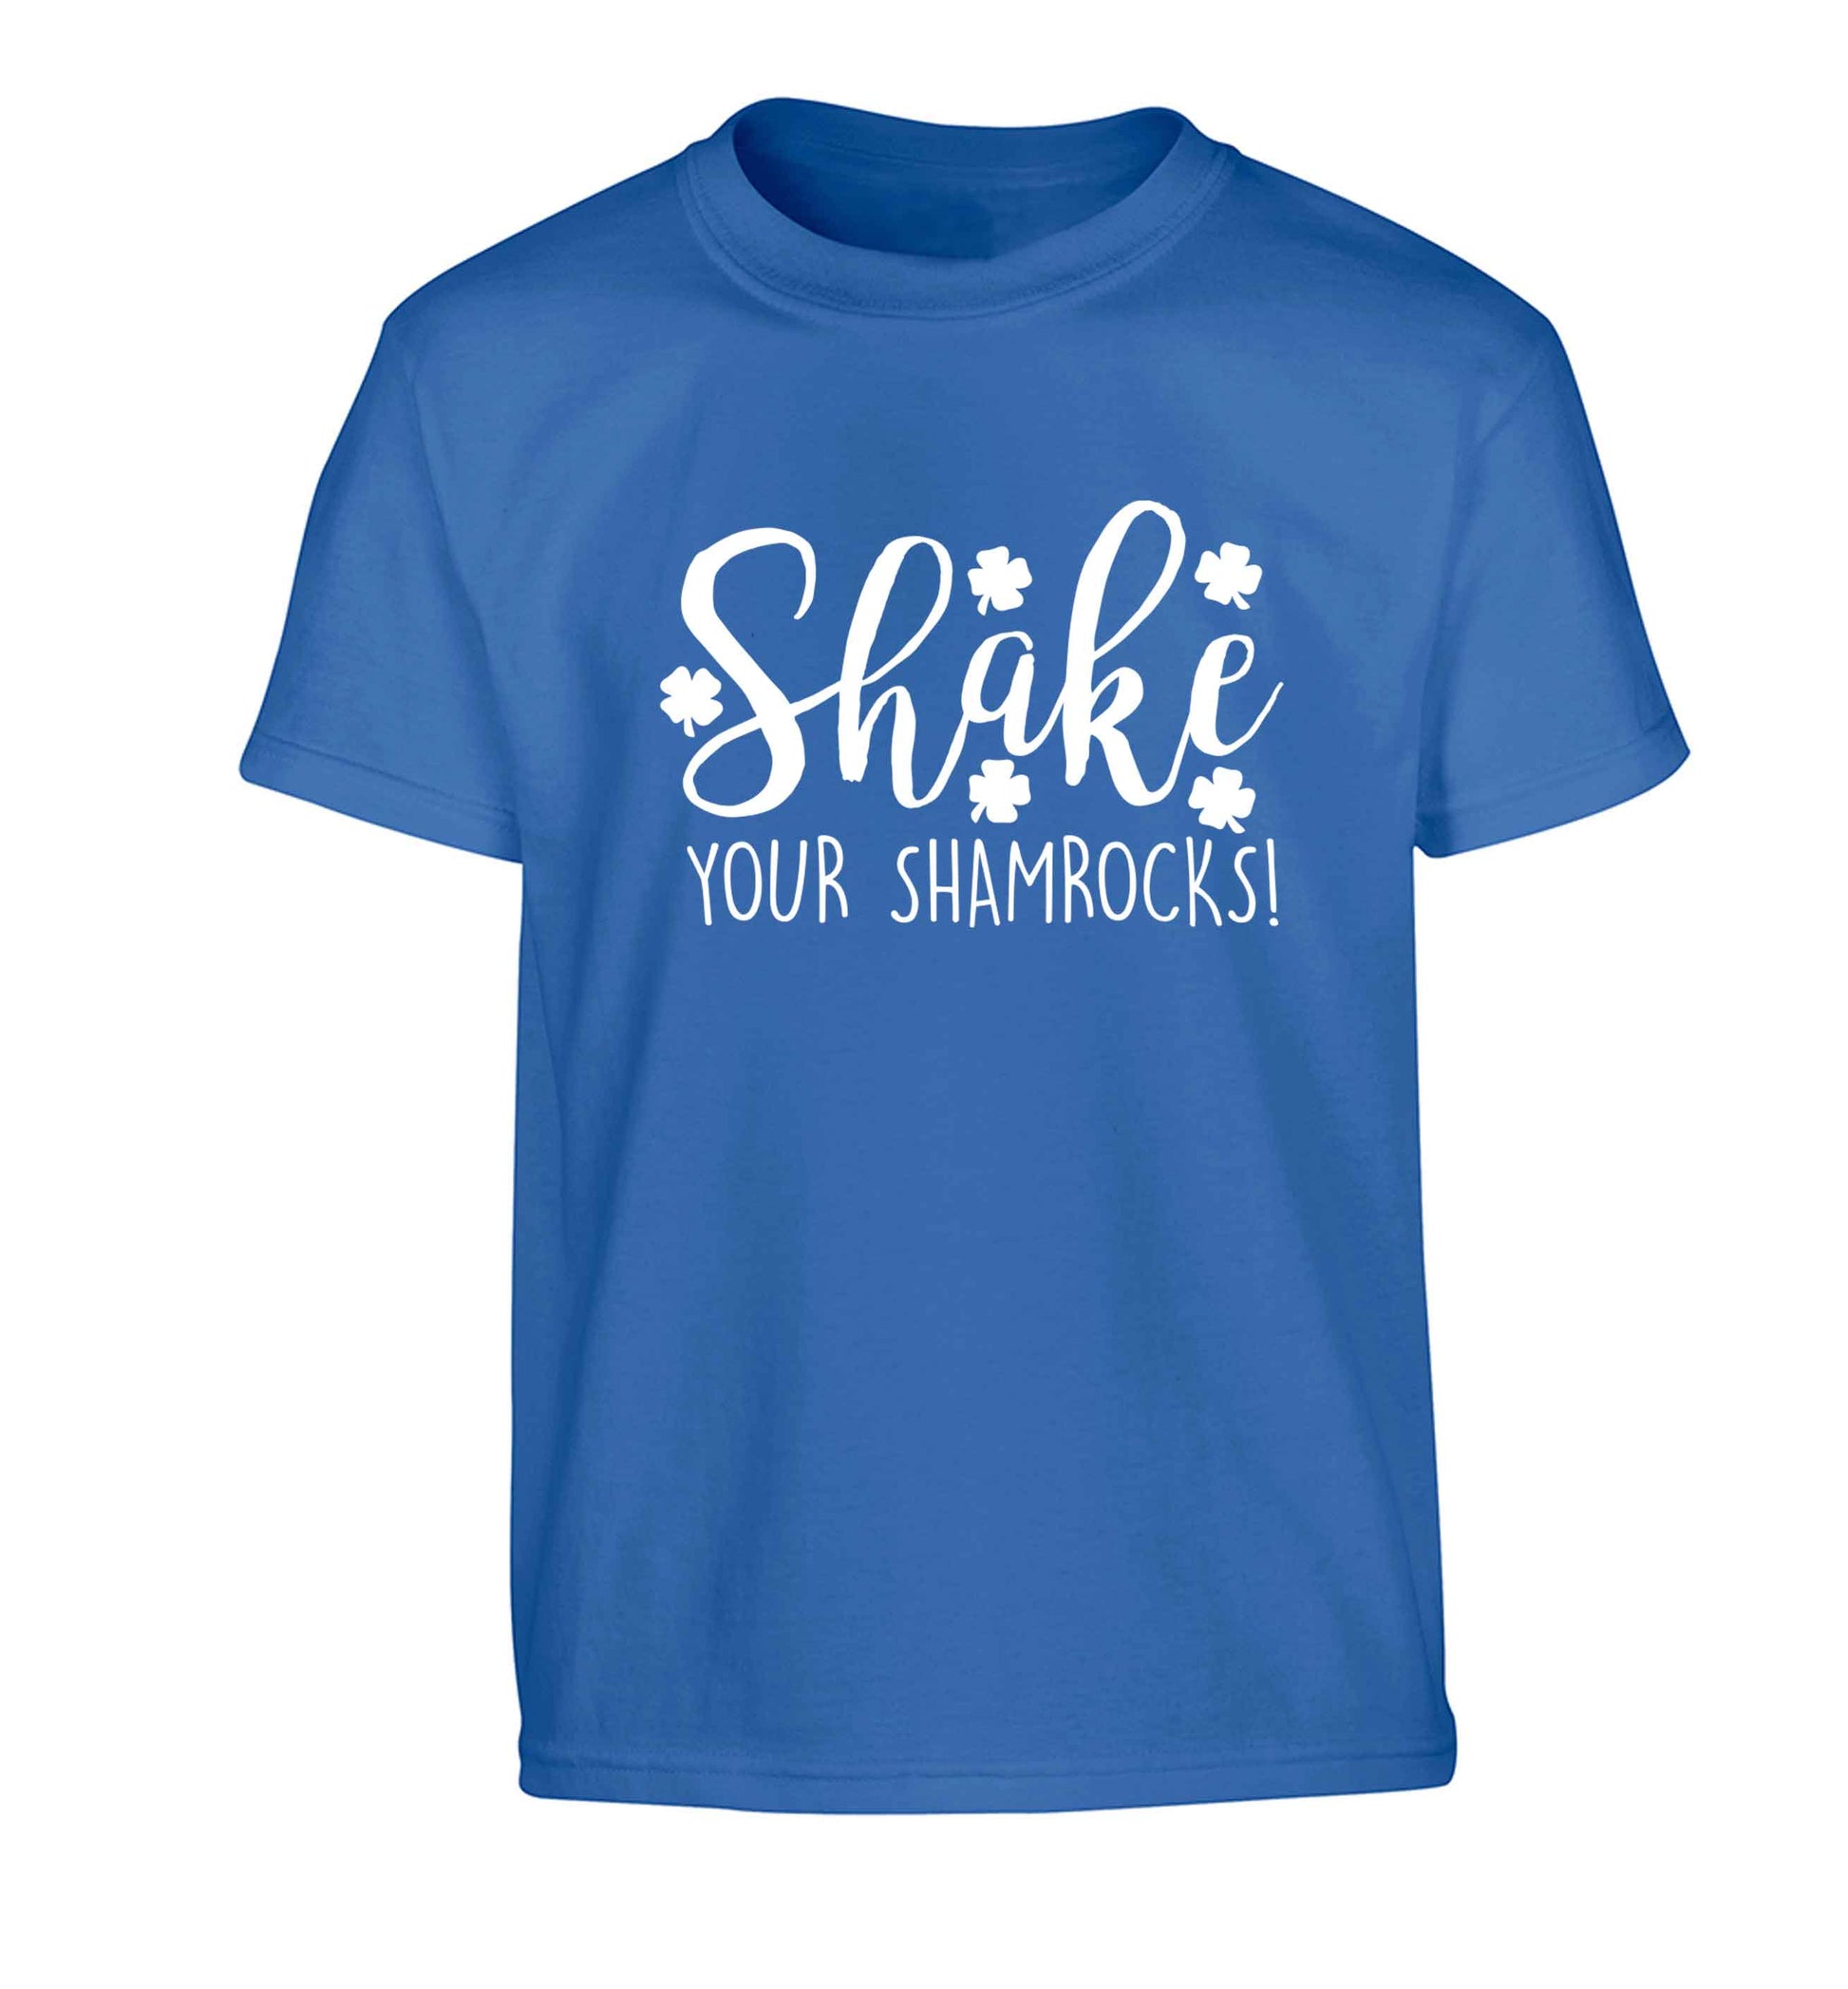 Shake your shamrocks Children's blue Tshirt 12-13 Years